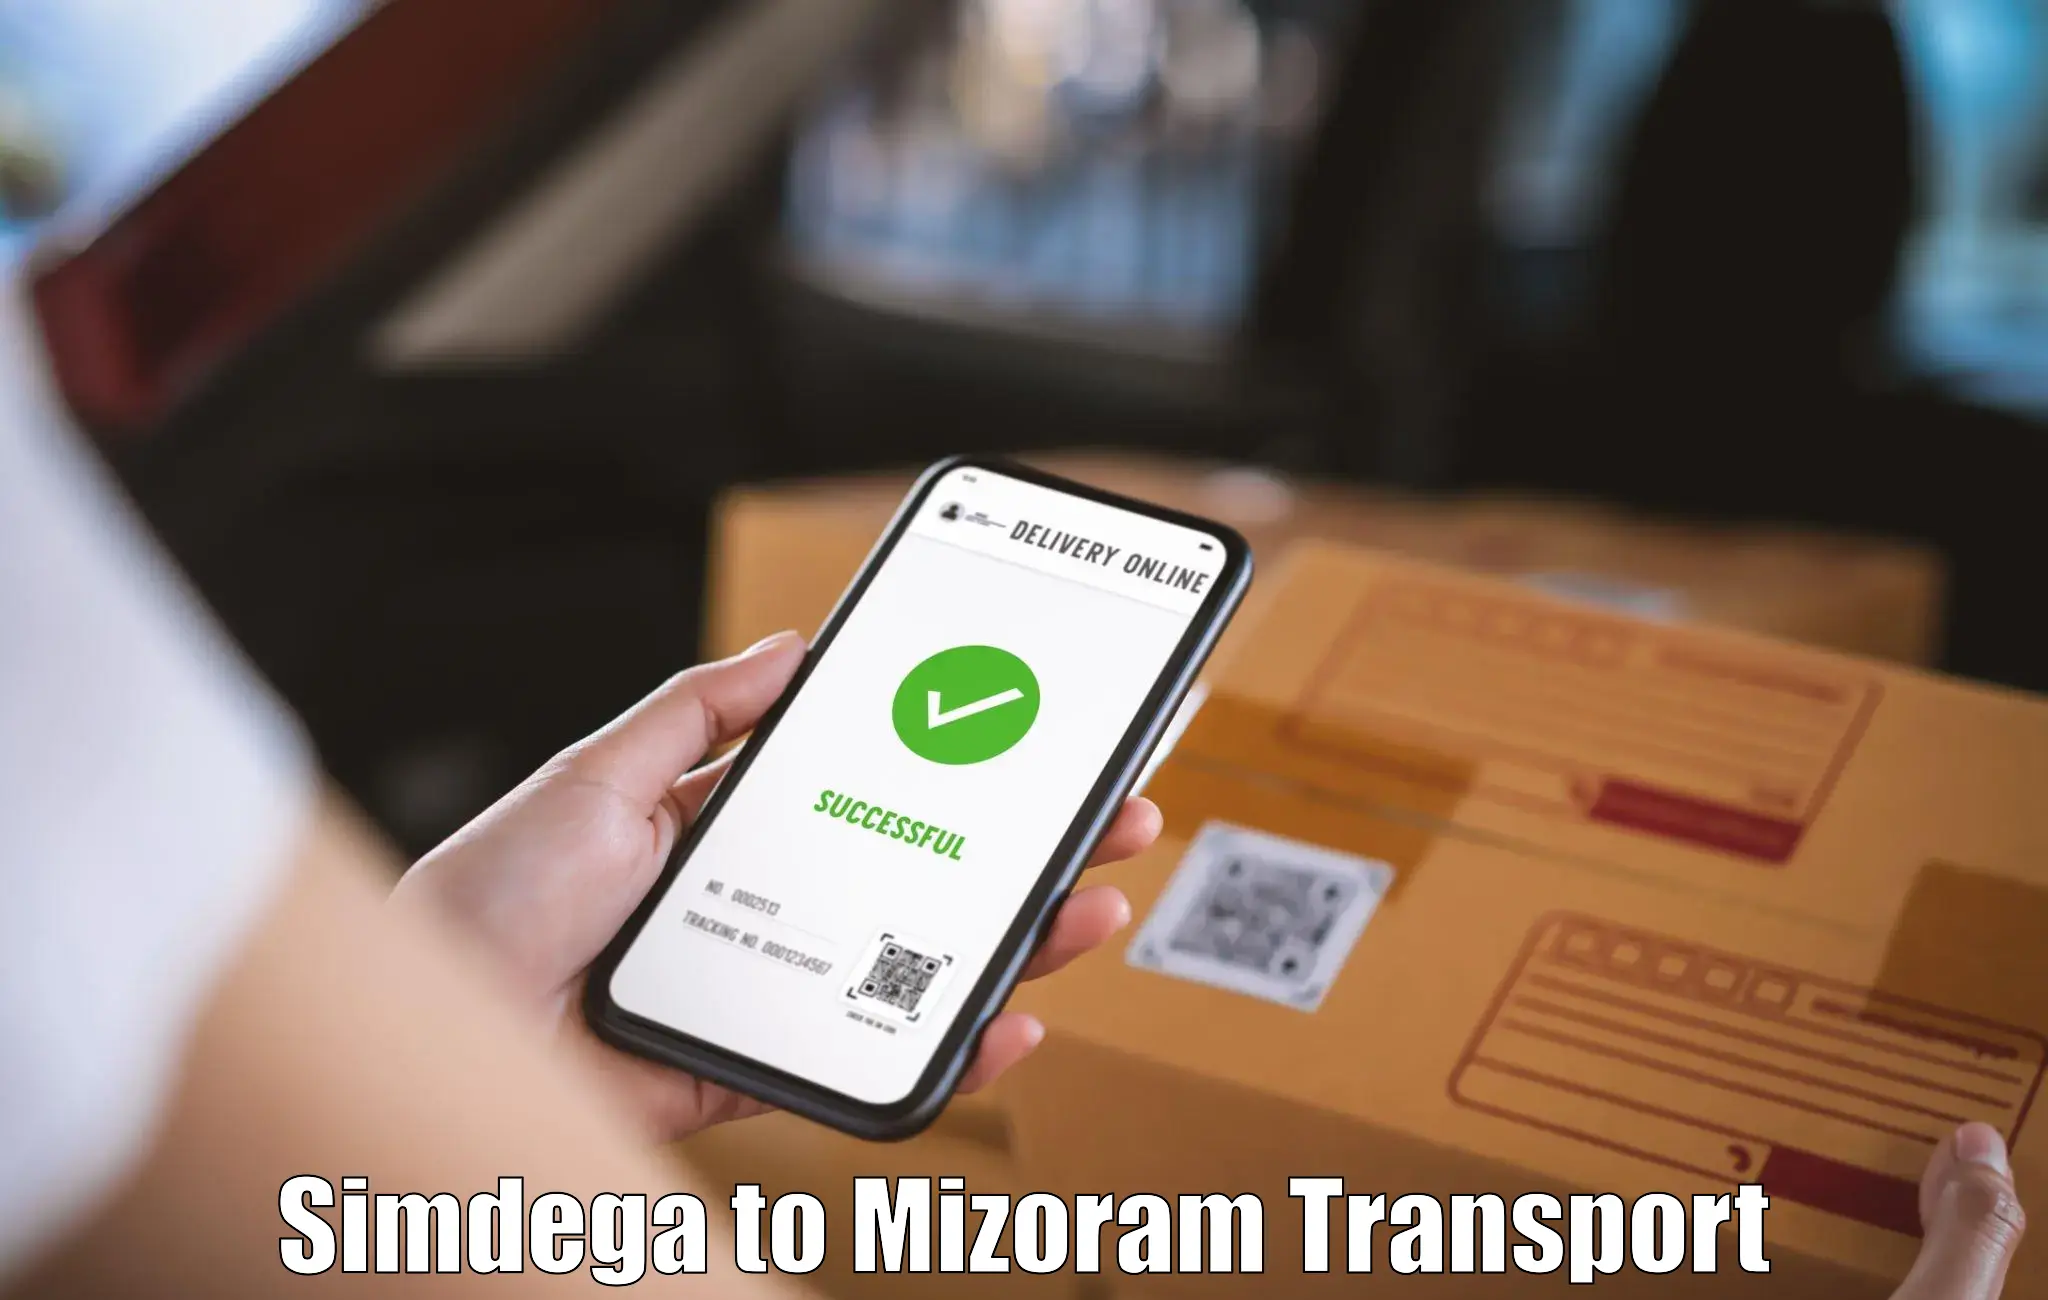 Daily transport service Simdega to Mizoram